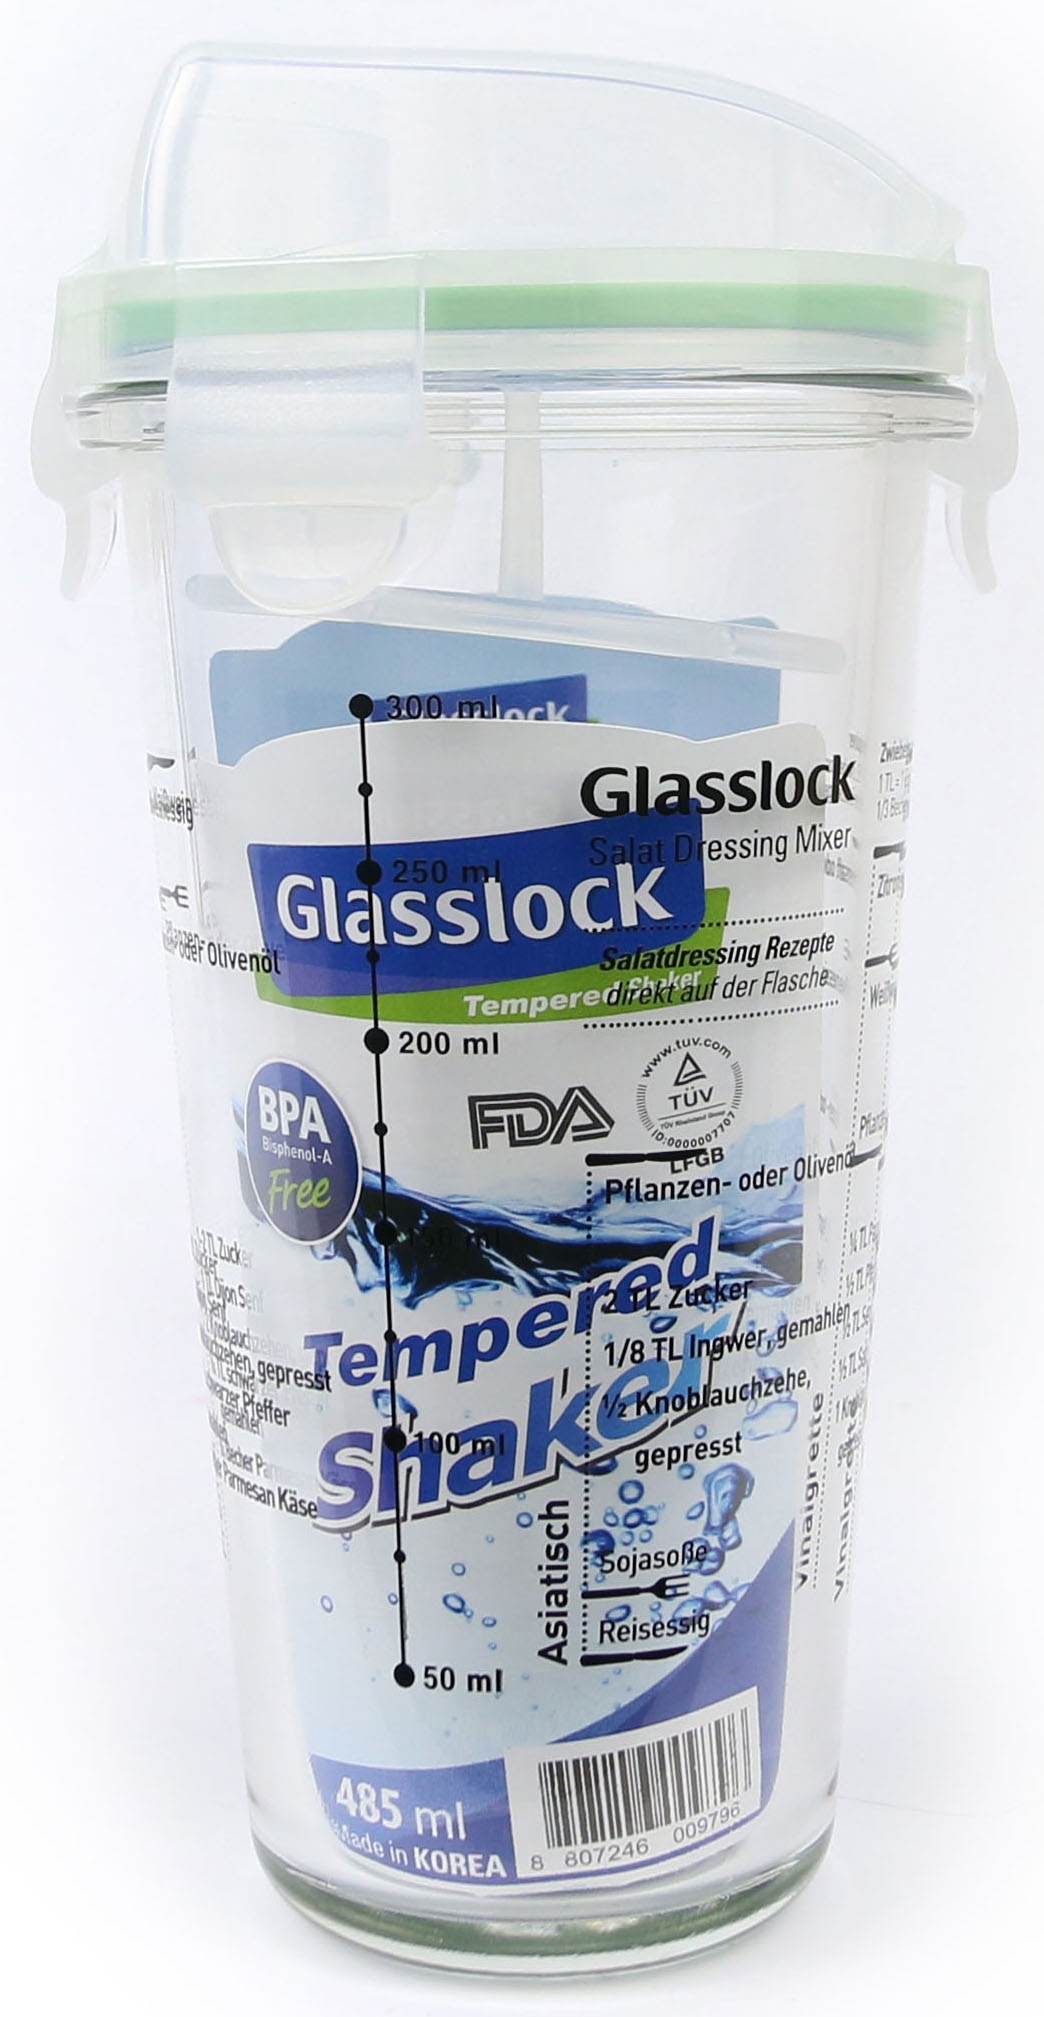 Glasslock Dressing Shaker, (Cocktail Shaker), 450 ml